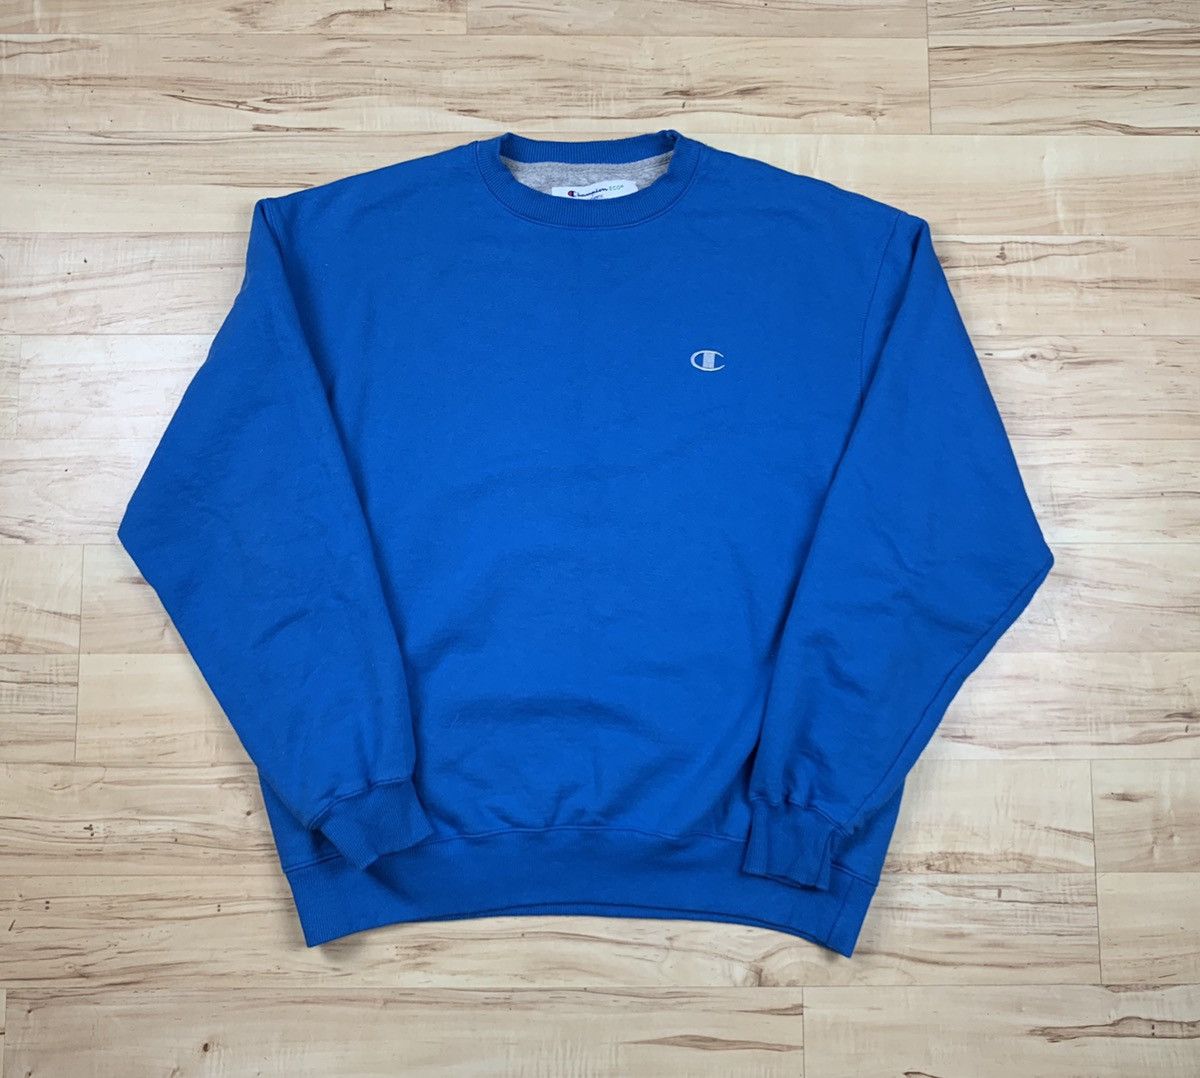 Vintage Champion Crewneck Sweatshirt Light Blue Size US L / EU 52-54 / 3 - 1 Preview